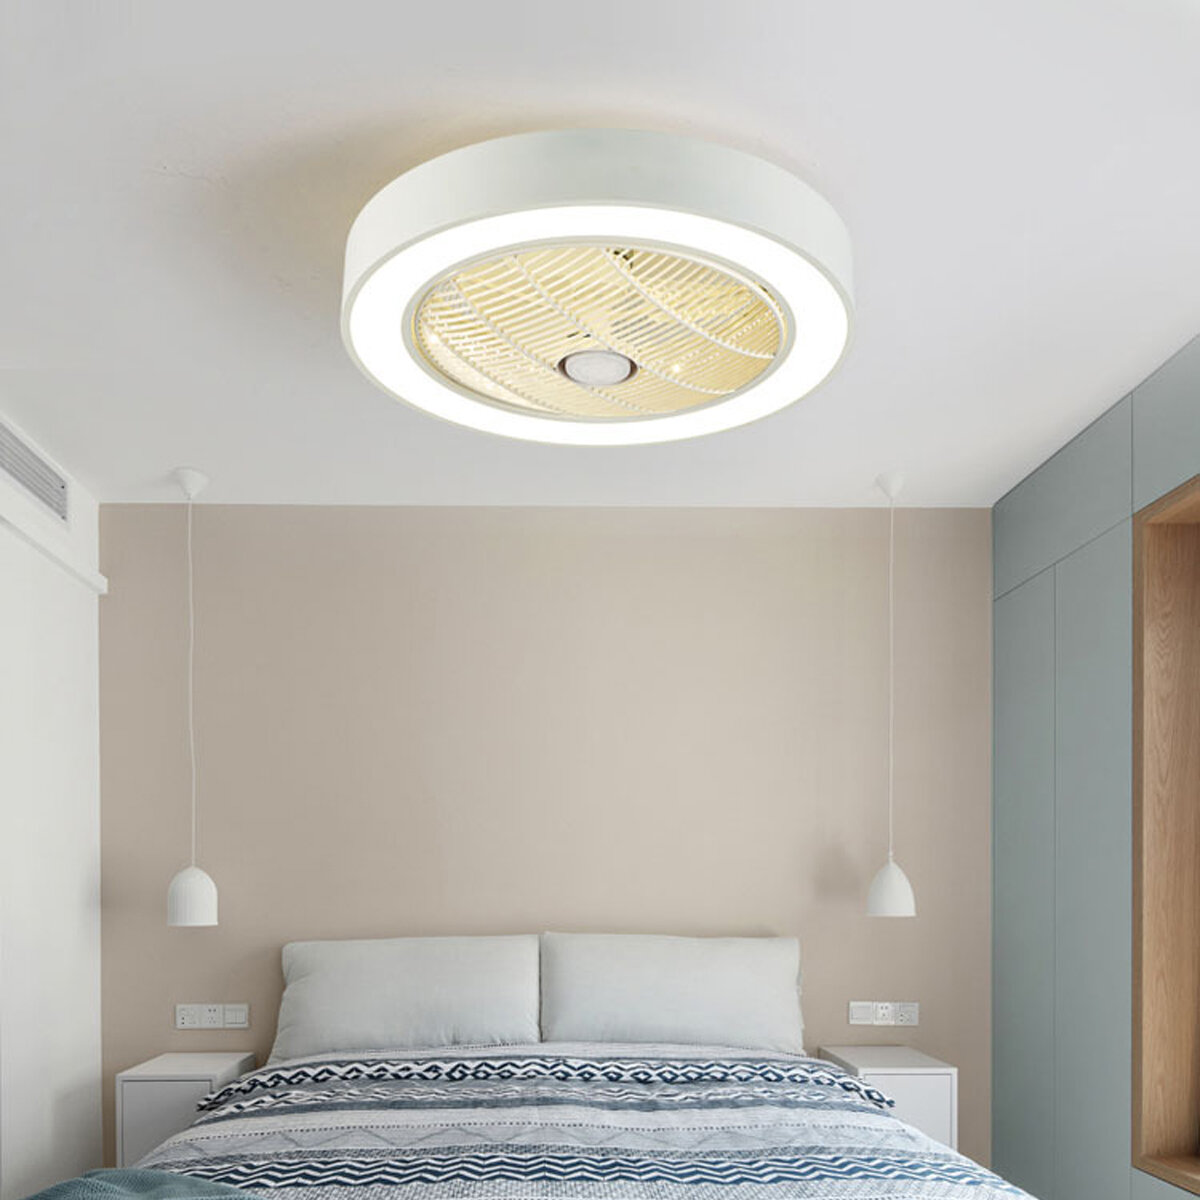 

220V 50cm LED Ceiling Fan Light APP BT Remote Control 3 Color Dimmable 3 Speed Wind for Indoor Bedroom